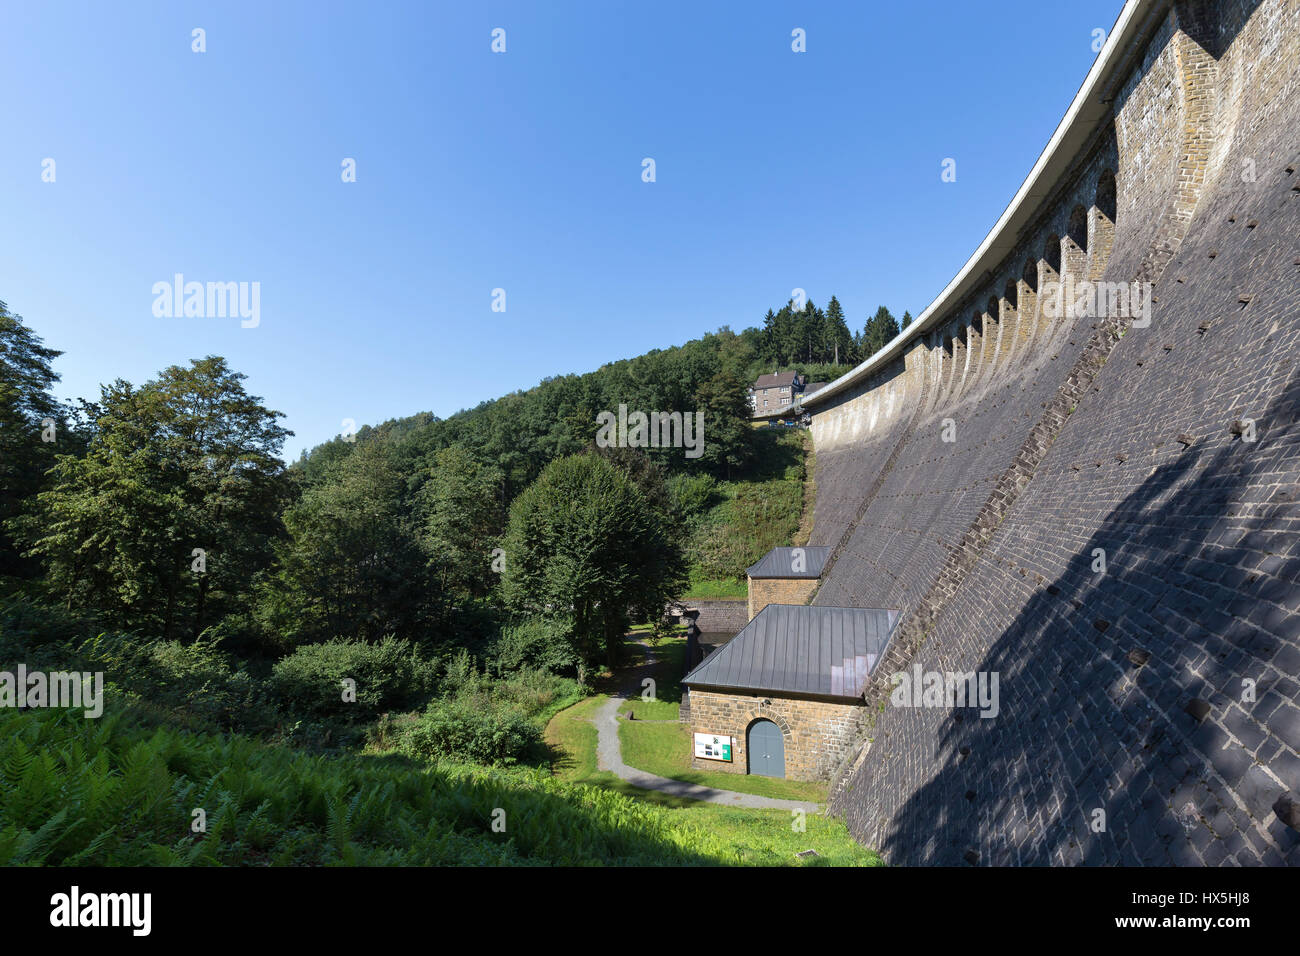 Damm der Aggertalsperre - Stausee in der Nähe von Gummersbach / Deutschland Stockfoto